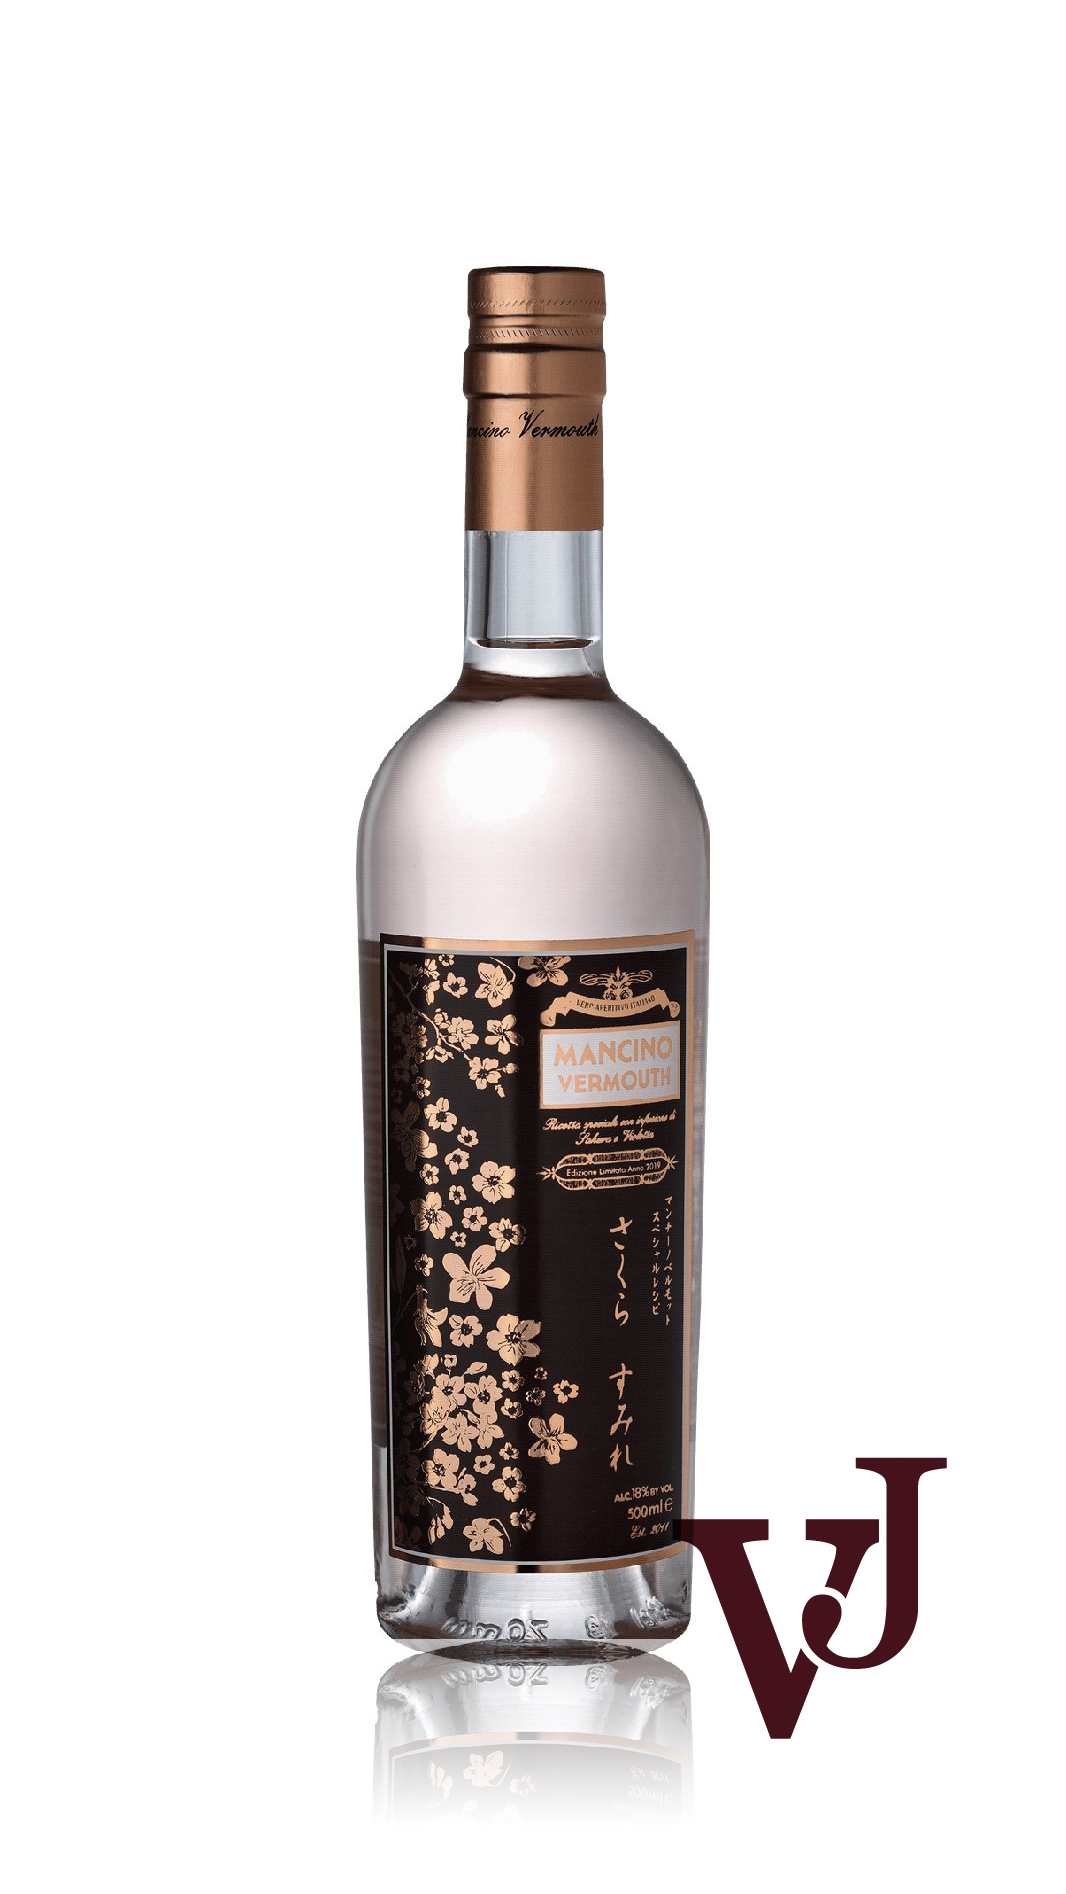 Övrigt vin - Mancino Vermouth Sakura artikel nummer 5081502 från producenten Giancarlo Mancino från området Italien